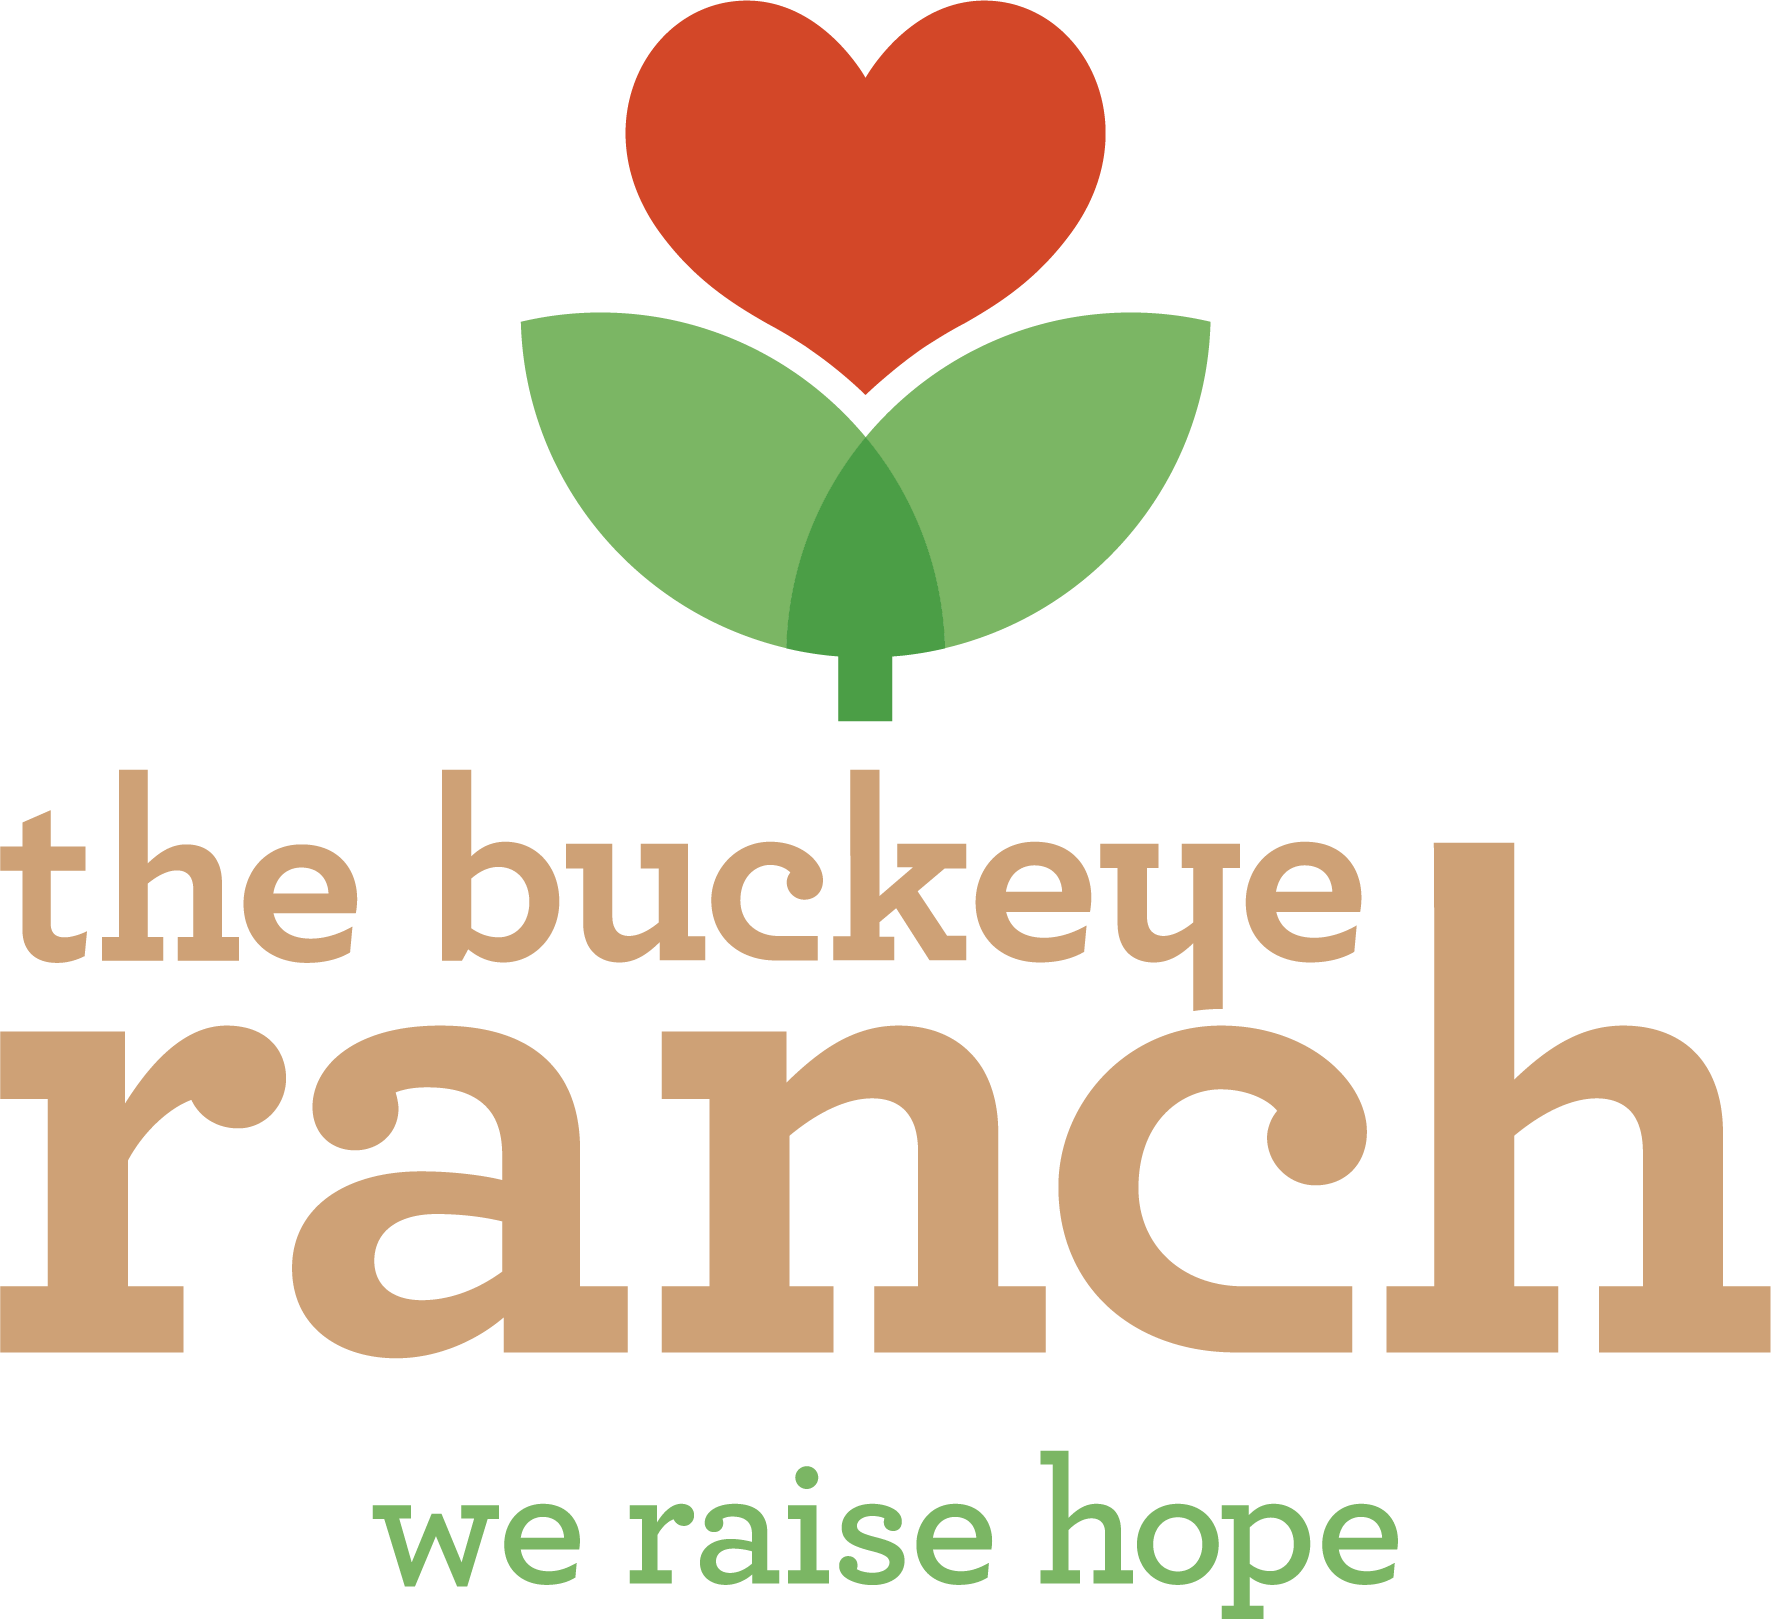 The Buckeye Ranch